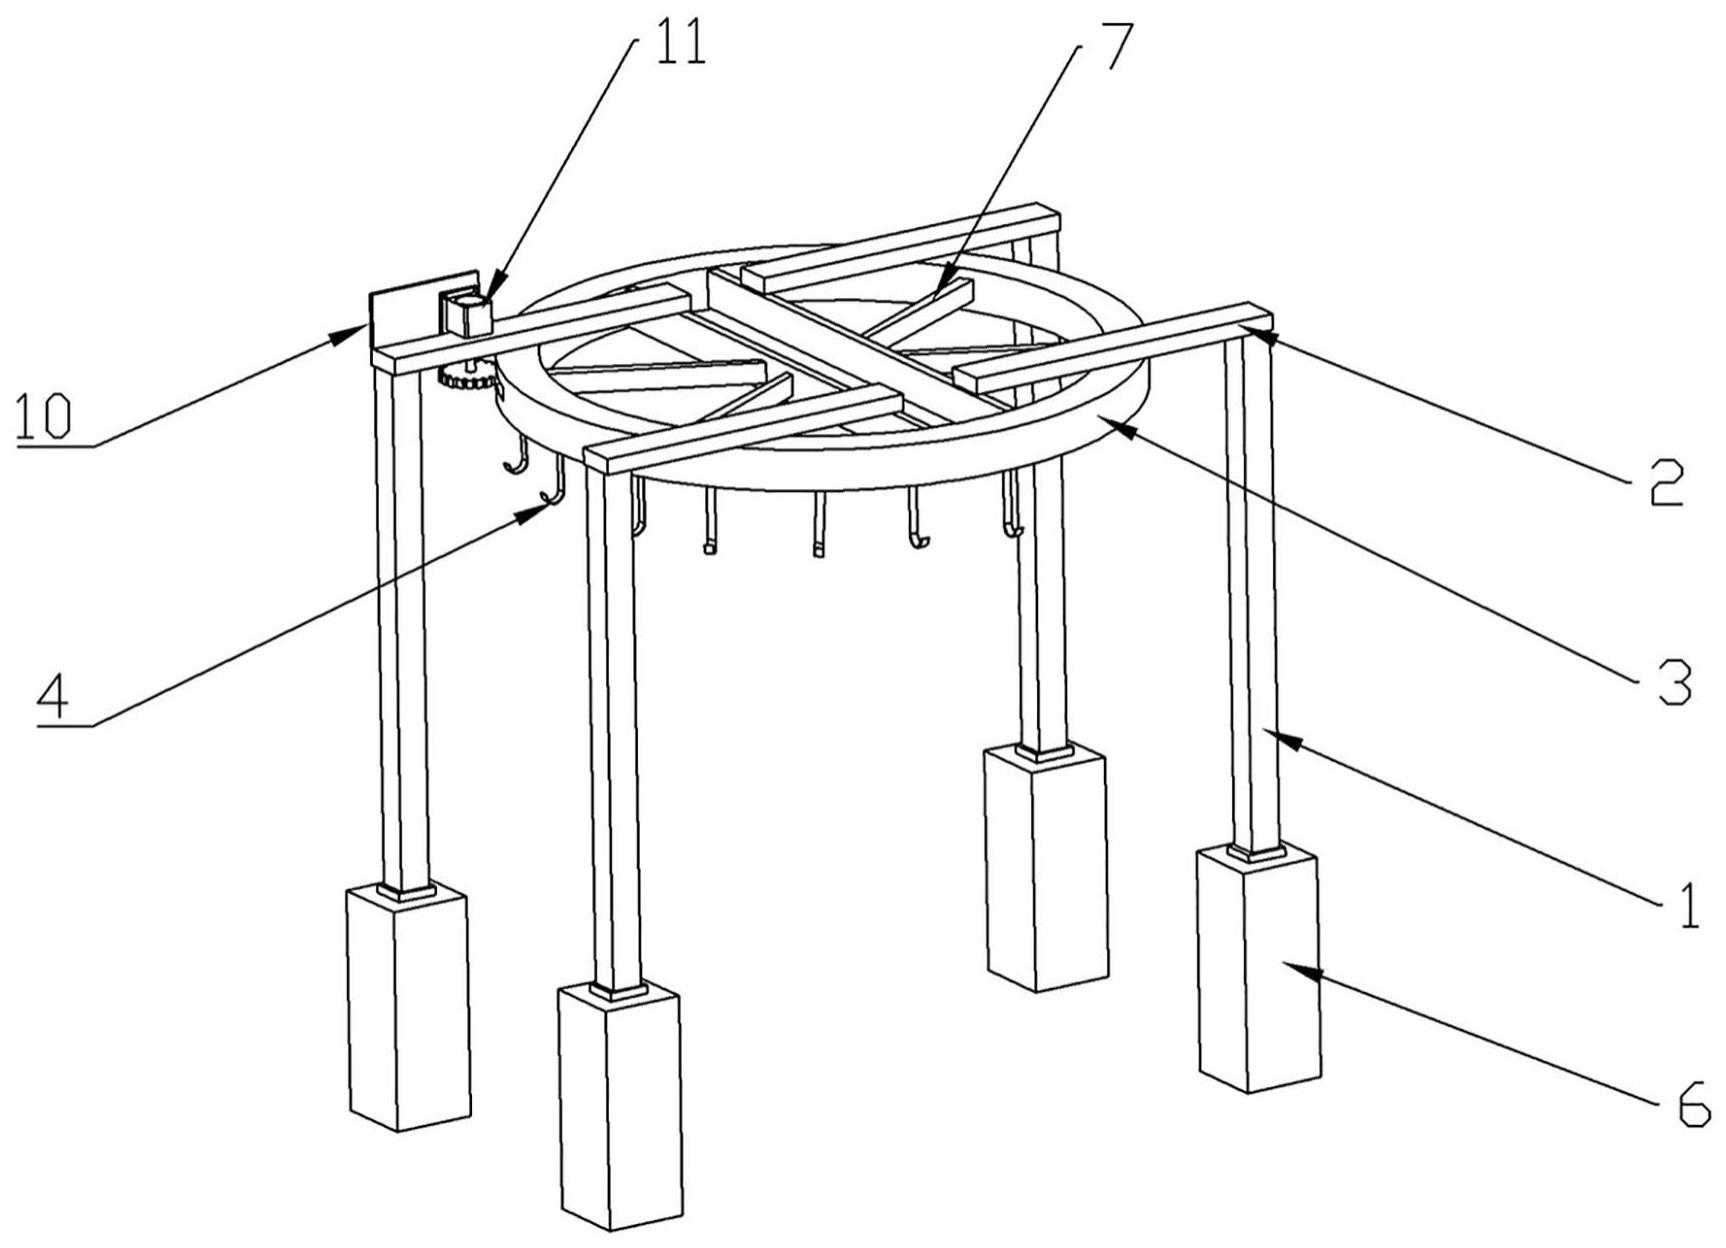 应用于建筑爬架防护网喷漆加工的悬挂装置的制作方法